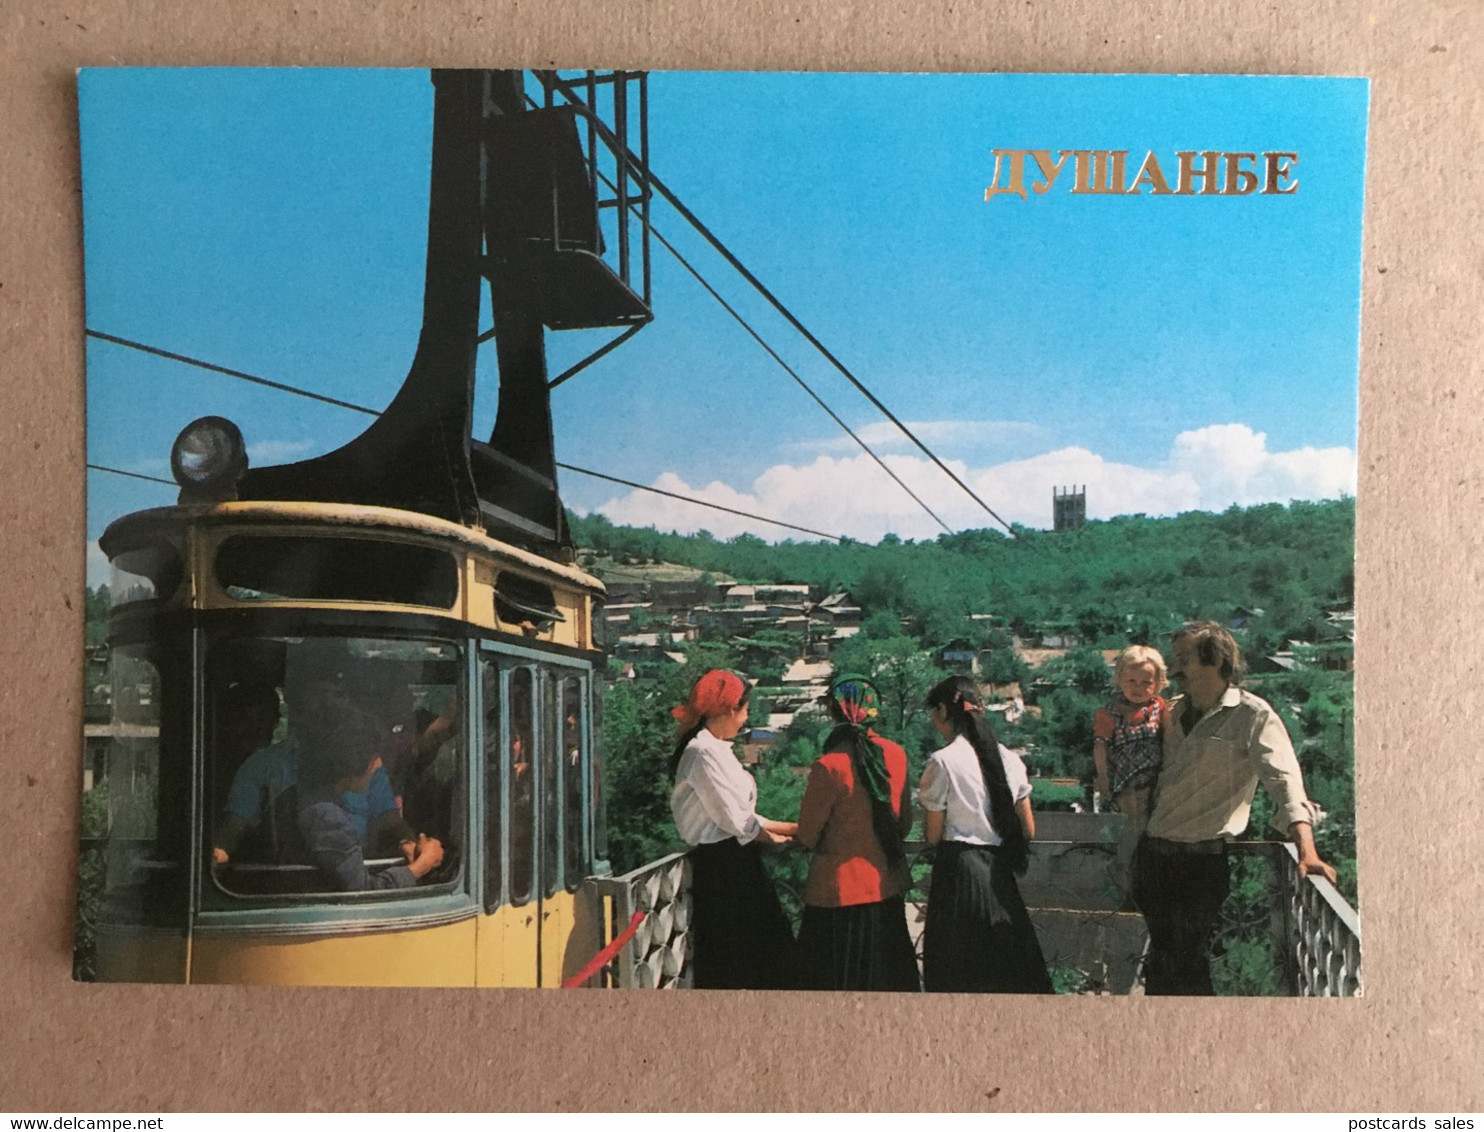 Dushanbe railway cable car téléphérique Eisenbahn Seilbahn victory park funicular railway